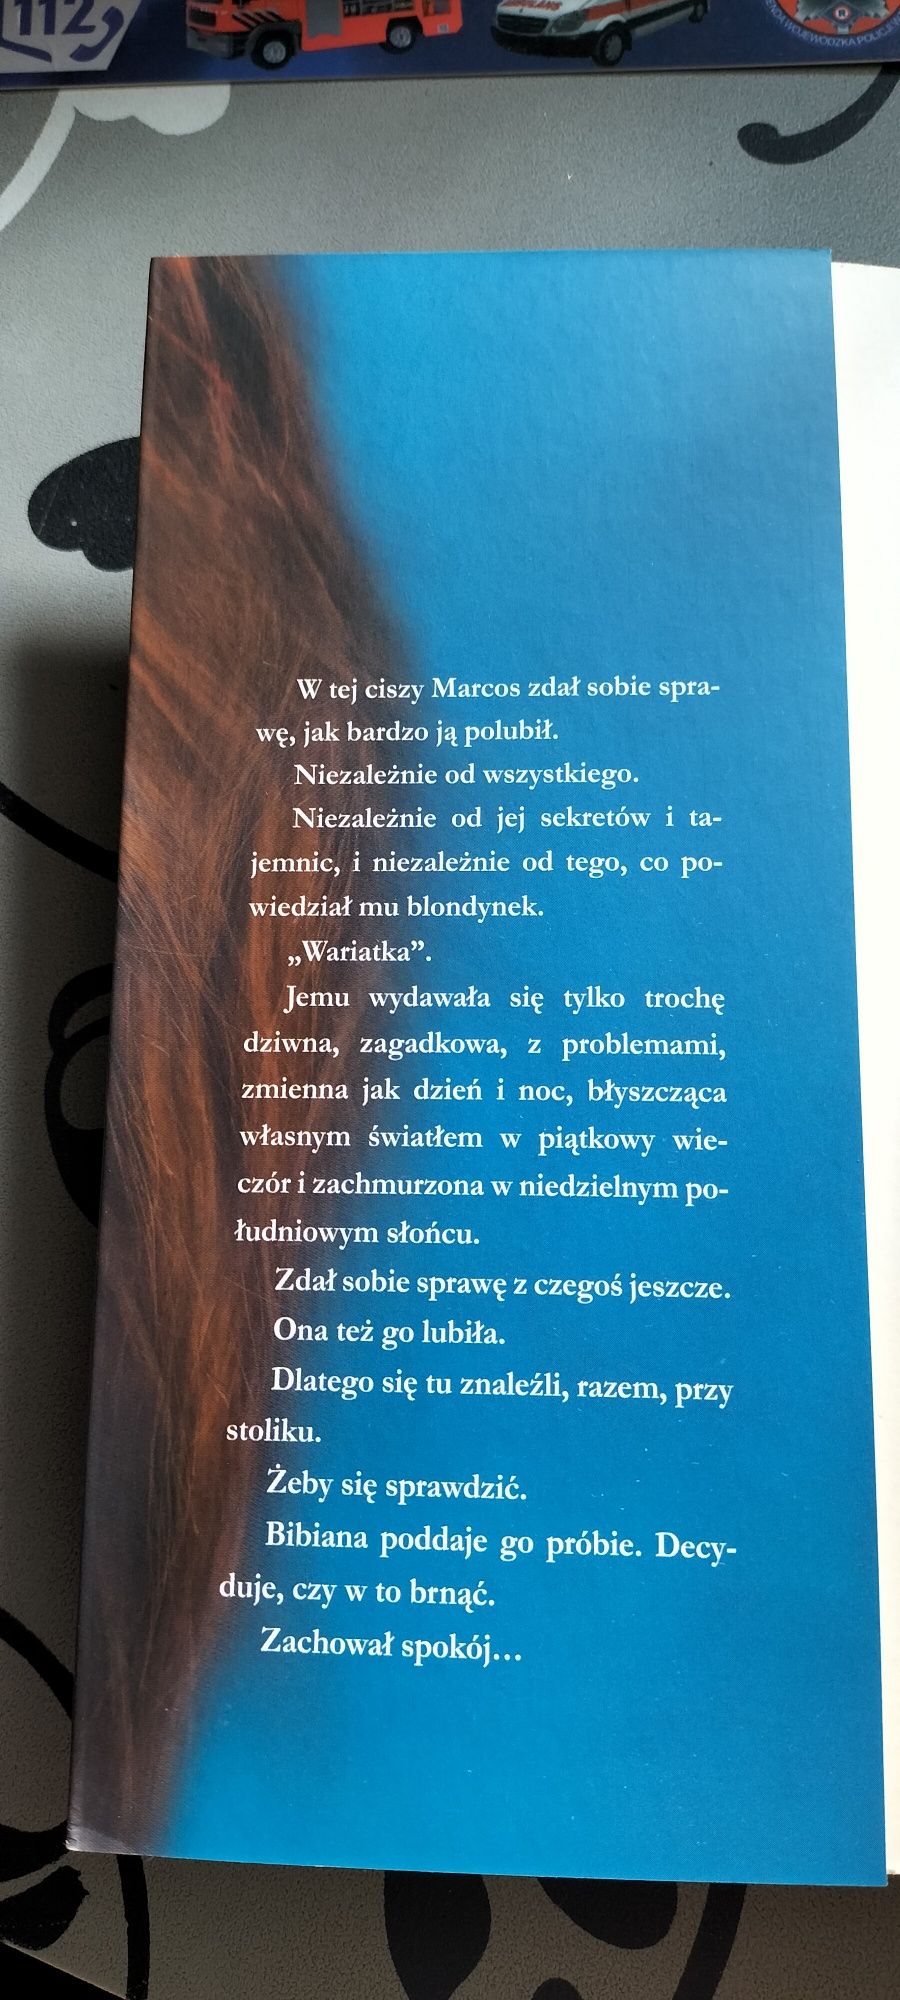 Książka "36 pytań, by cię poznać 4 minuty, by pokochać" Jordi Sierra i